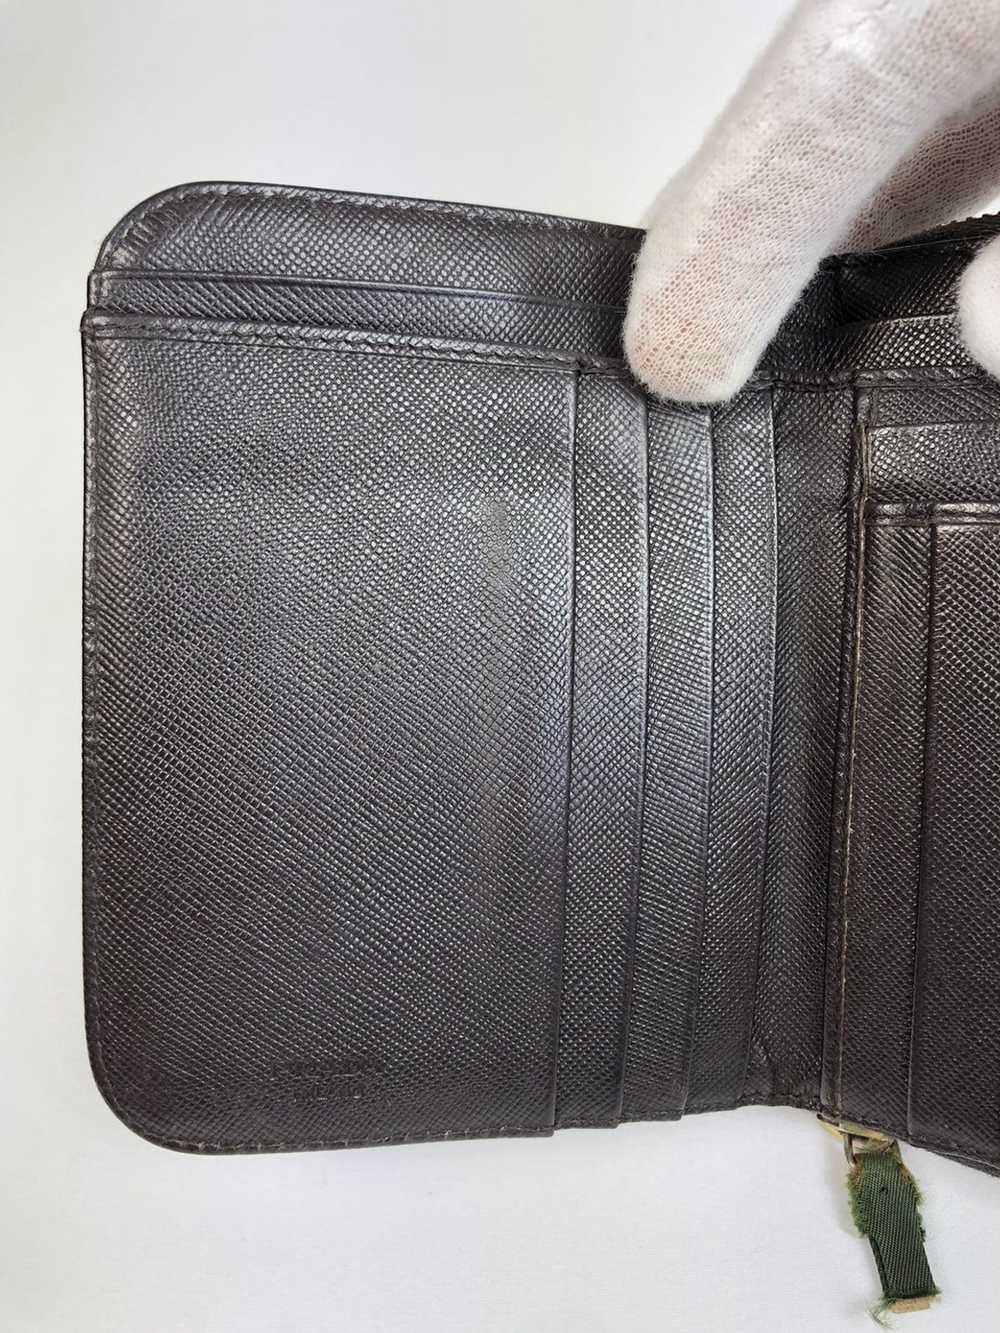 Prada Prada tessuto nylon zippy wallet - image 3